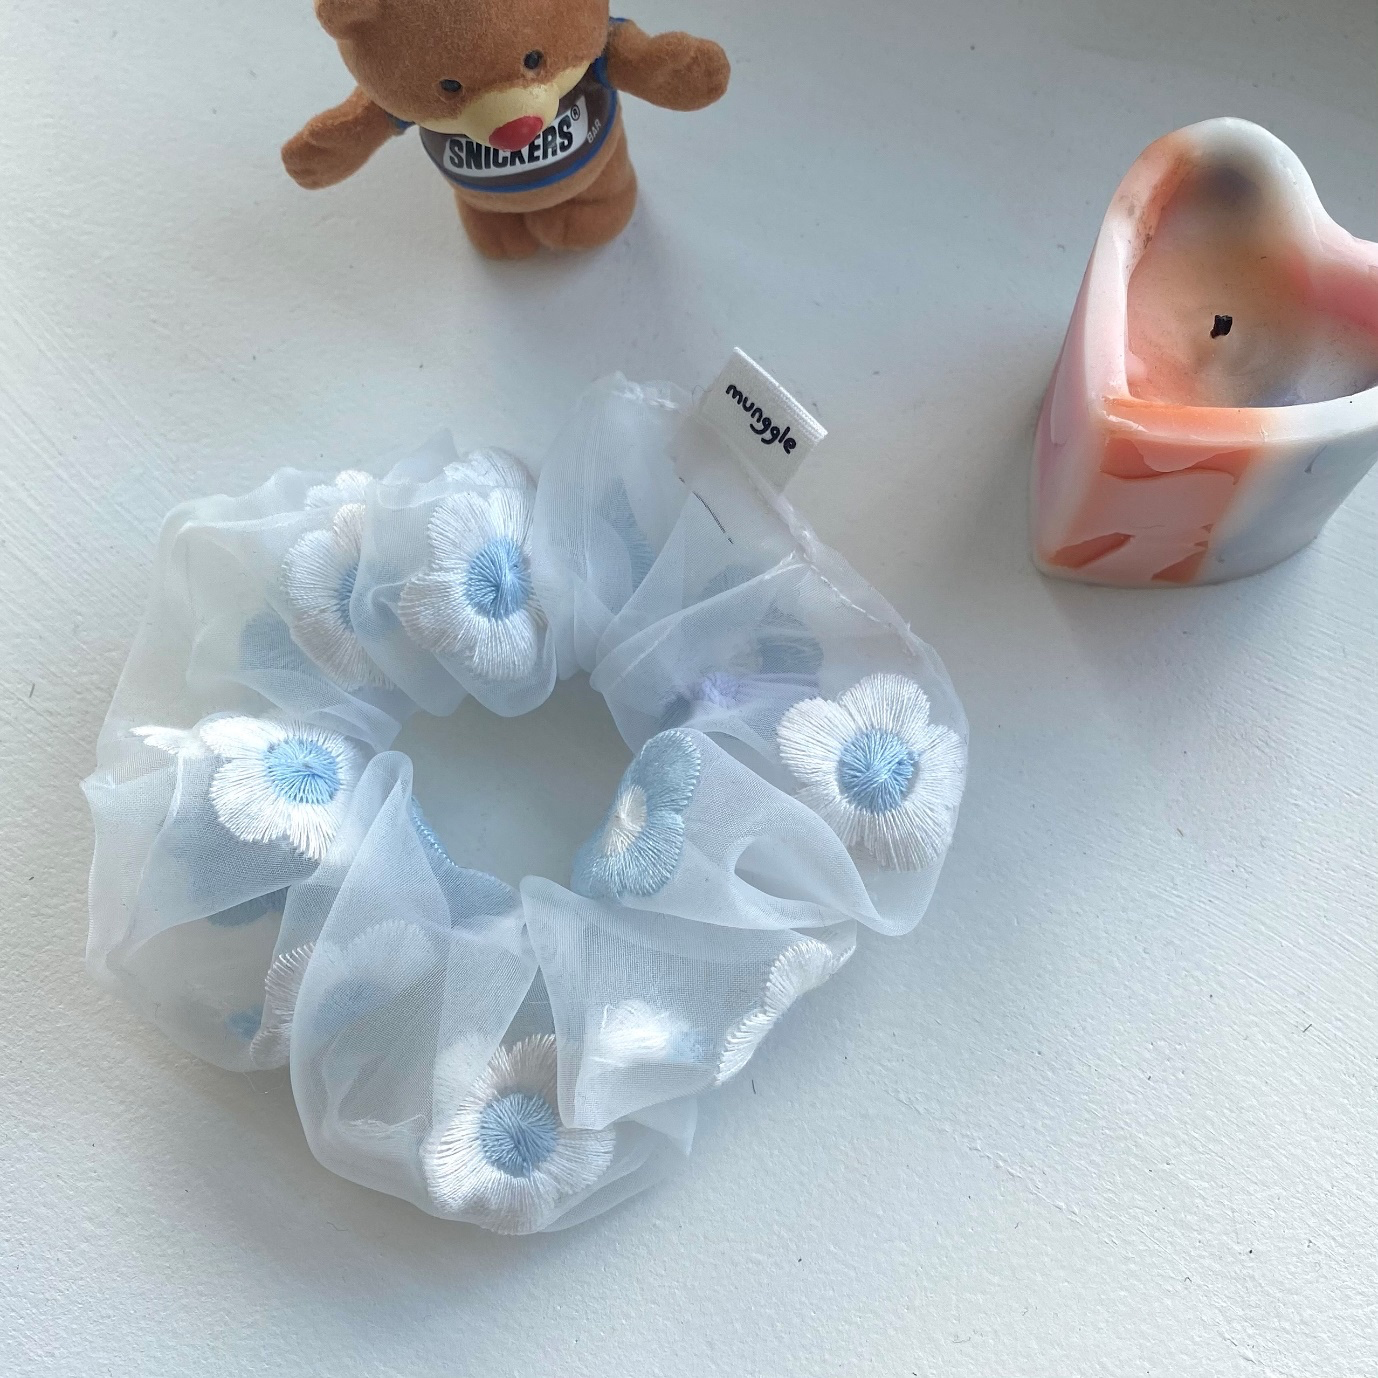 장난감, 플라스틱, 유아 완구, 동물 피규어이(가) 표시된 사진

자동 생성된 설명